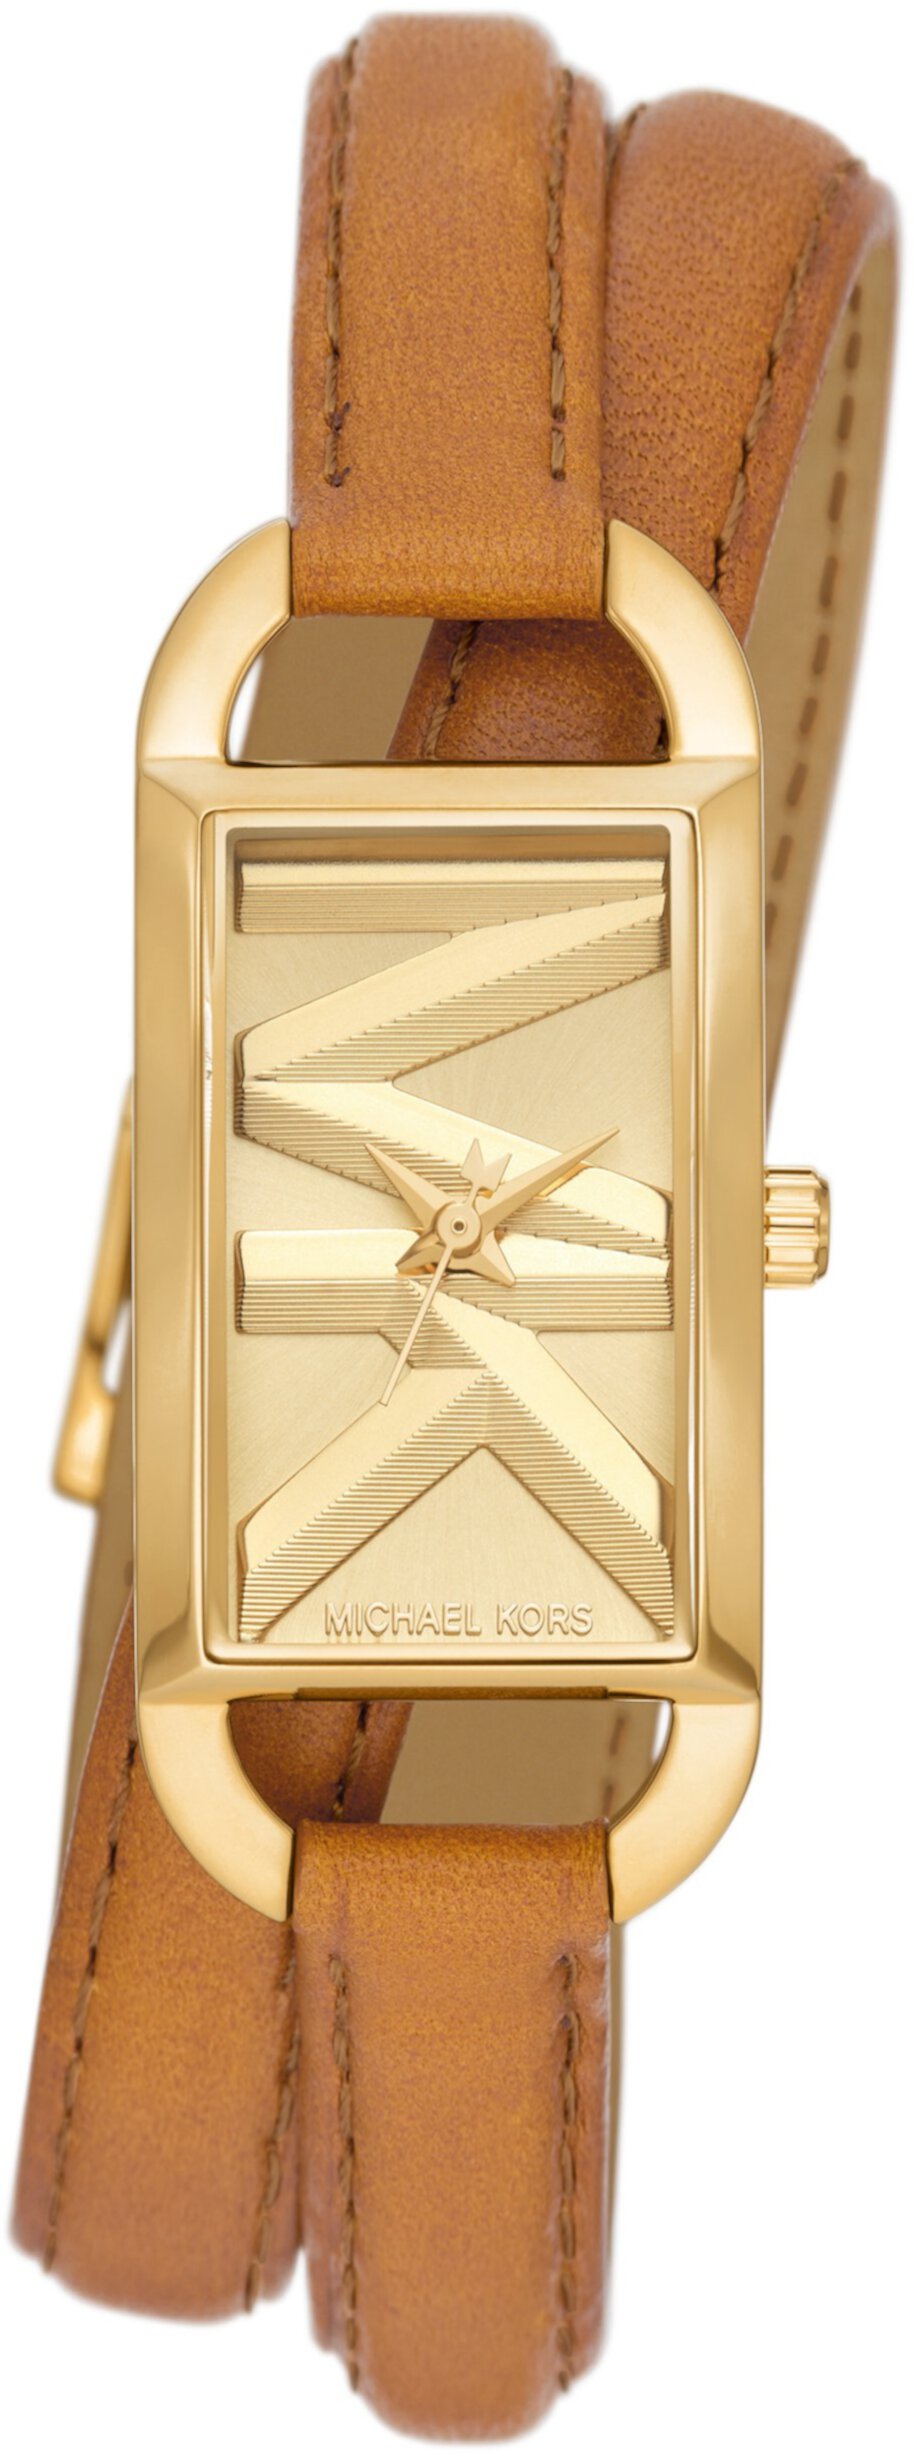 MK4721 — Кожаные часы Empire с тремя стрелками и двойной оберткой Michael Kors